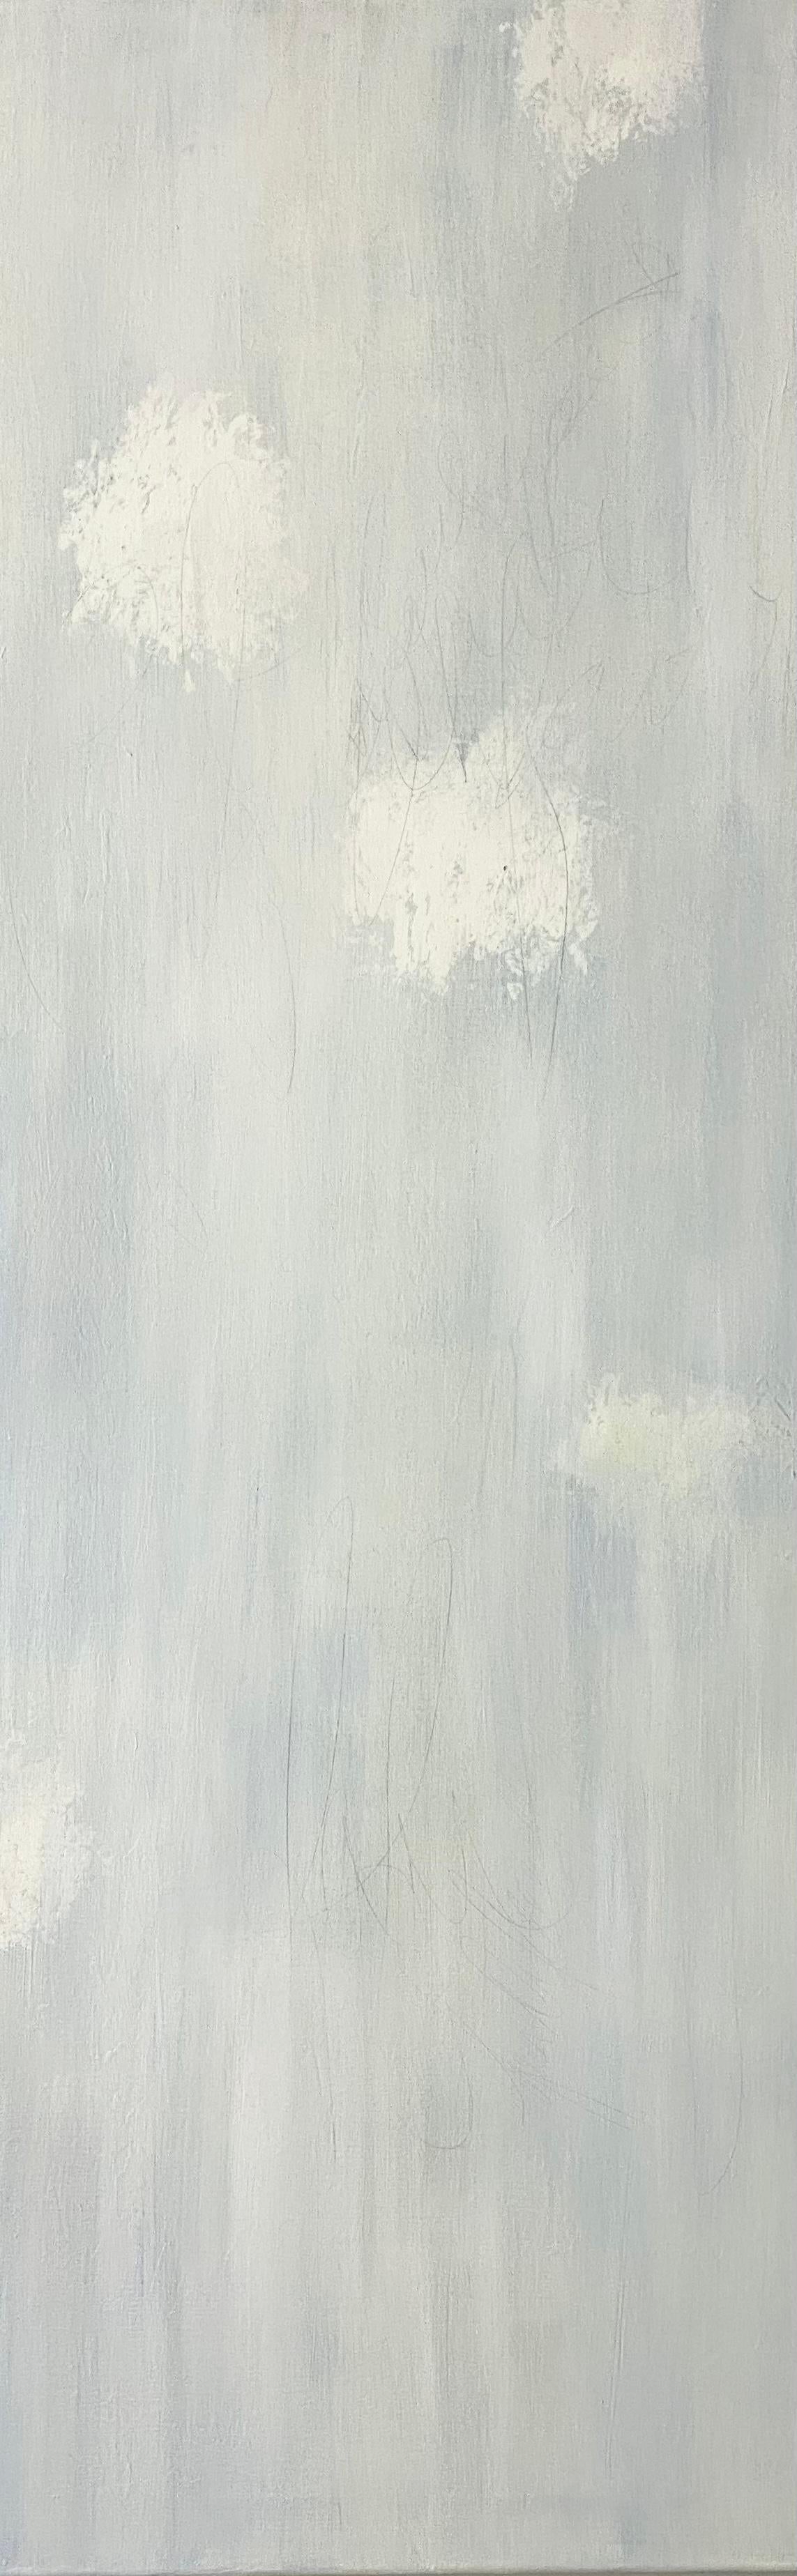 Pour simplicitys sake, contemporain, classique, Triptyque, blanc sur blanc, 3 panneaux - Impressionnisme abstrait Painting par Juanita Bellavance 